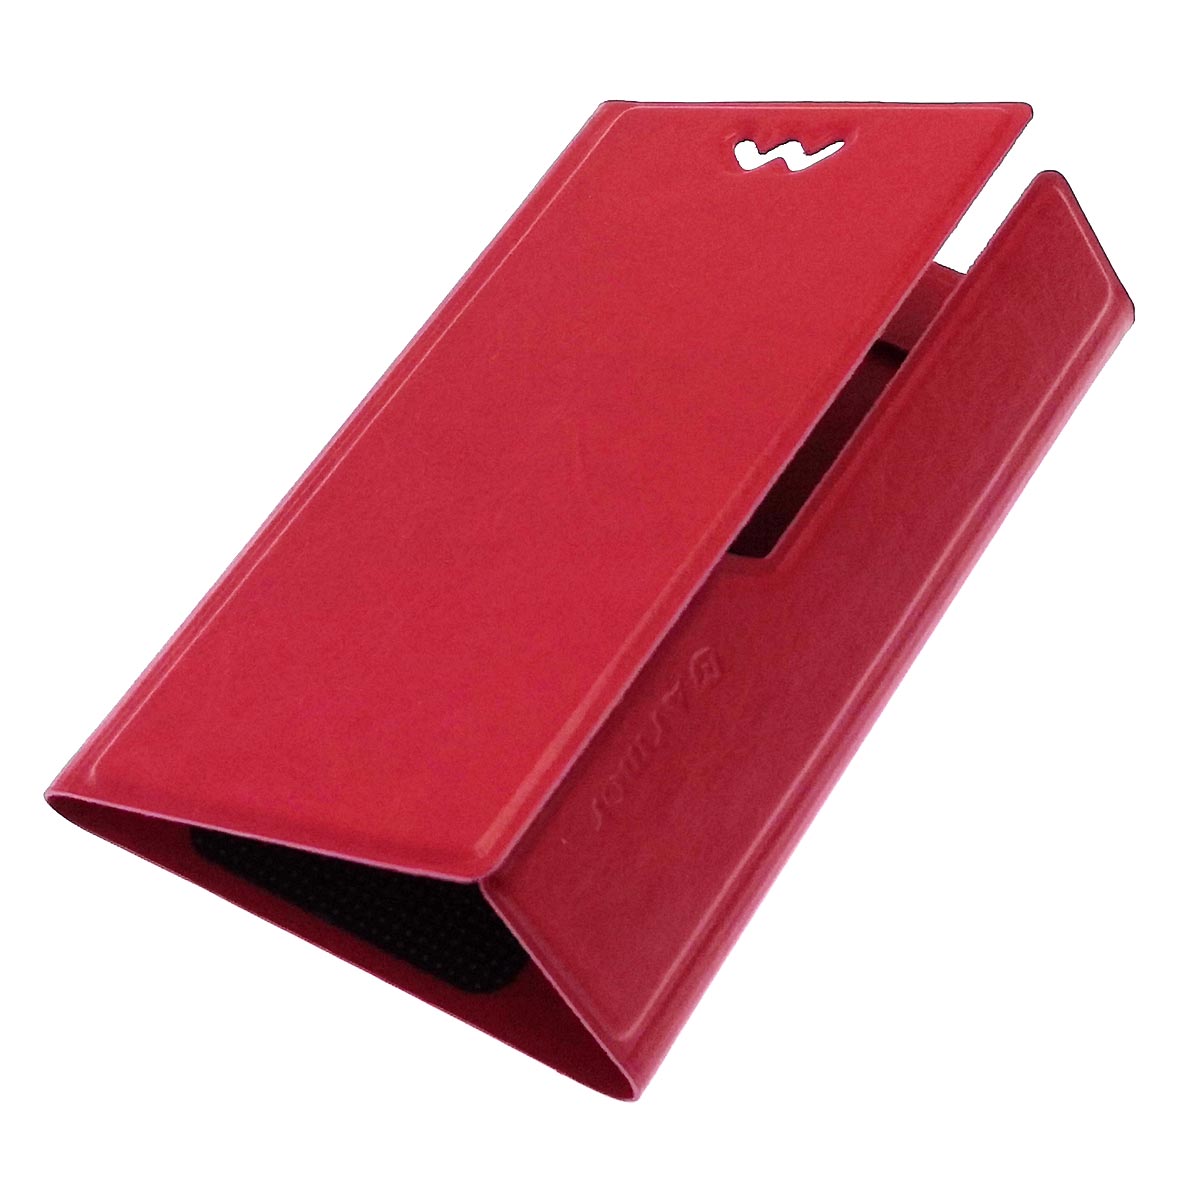 Чехол книжка универсальная Армор для смартфонов размером S, экокожа, цвет красный.